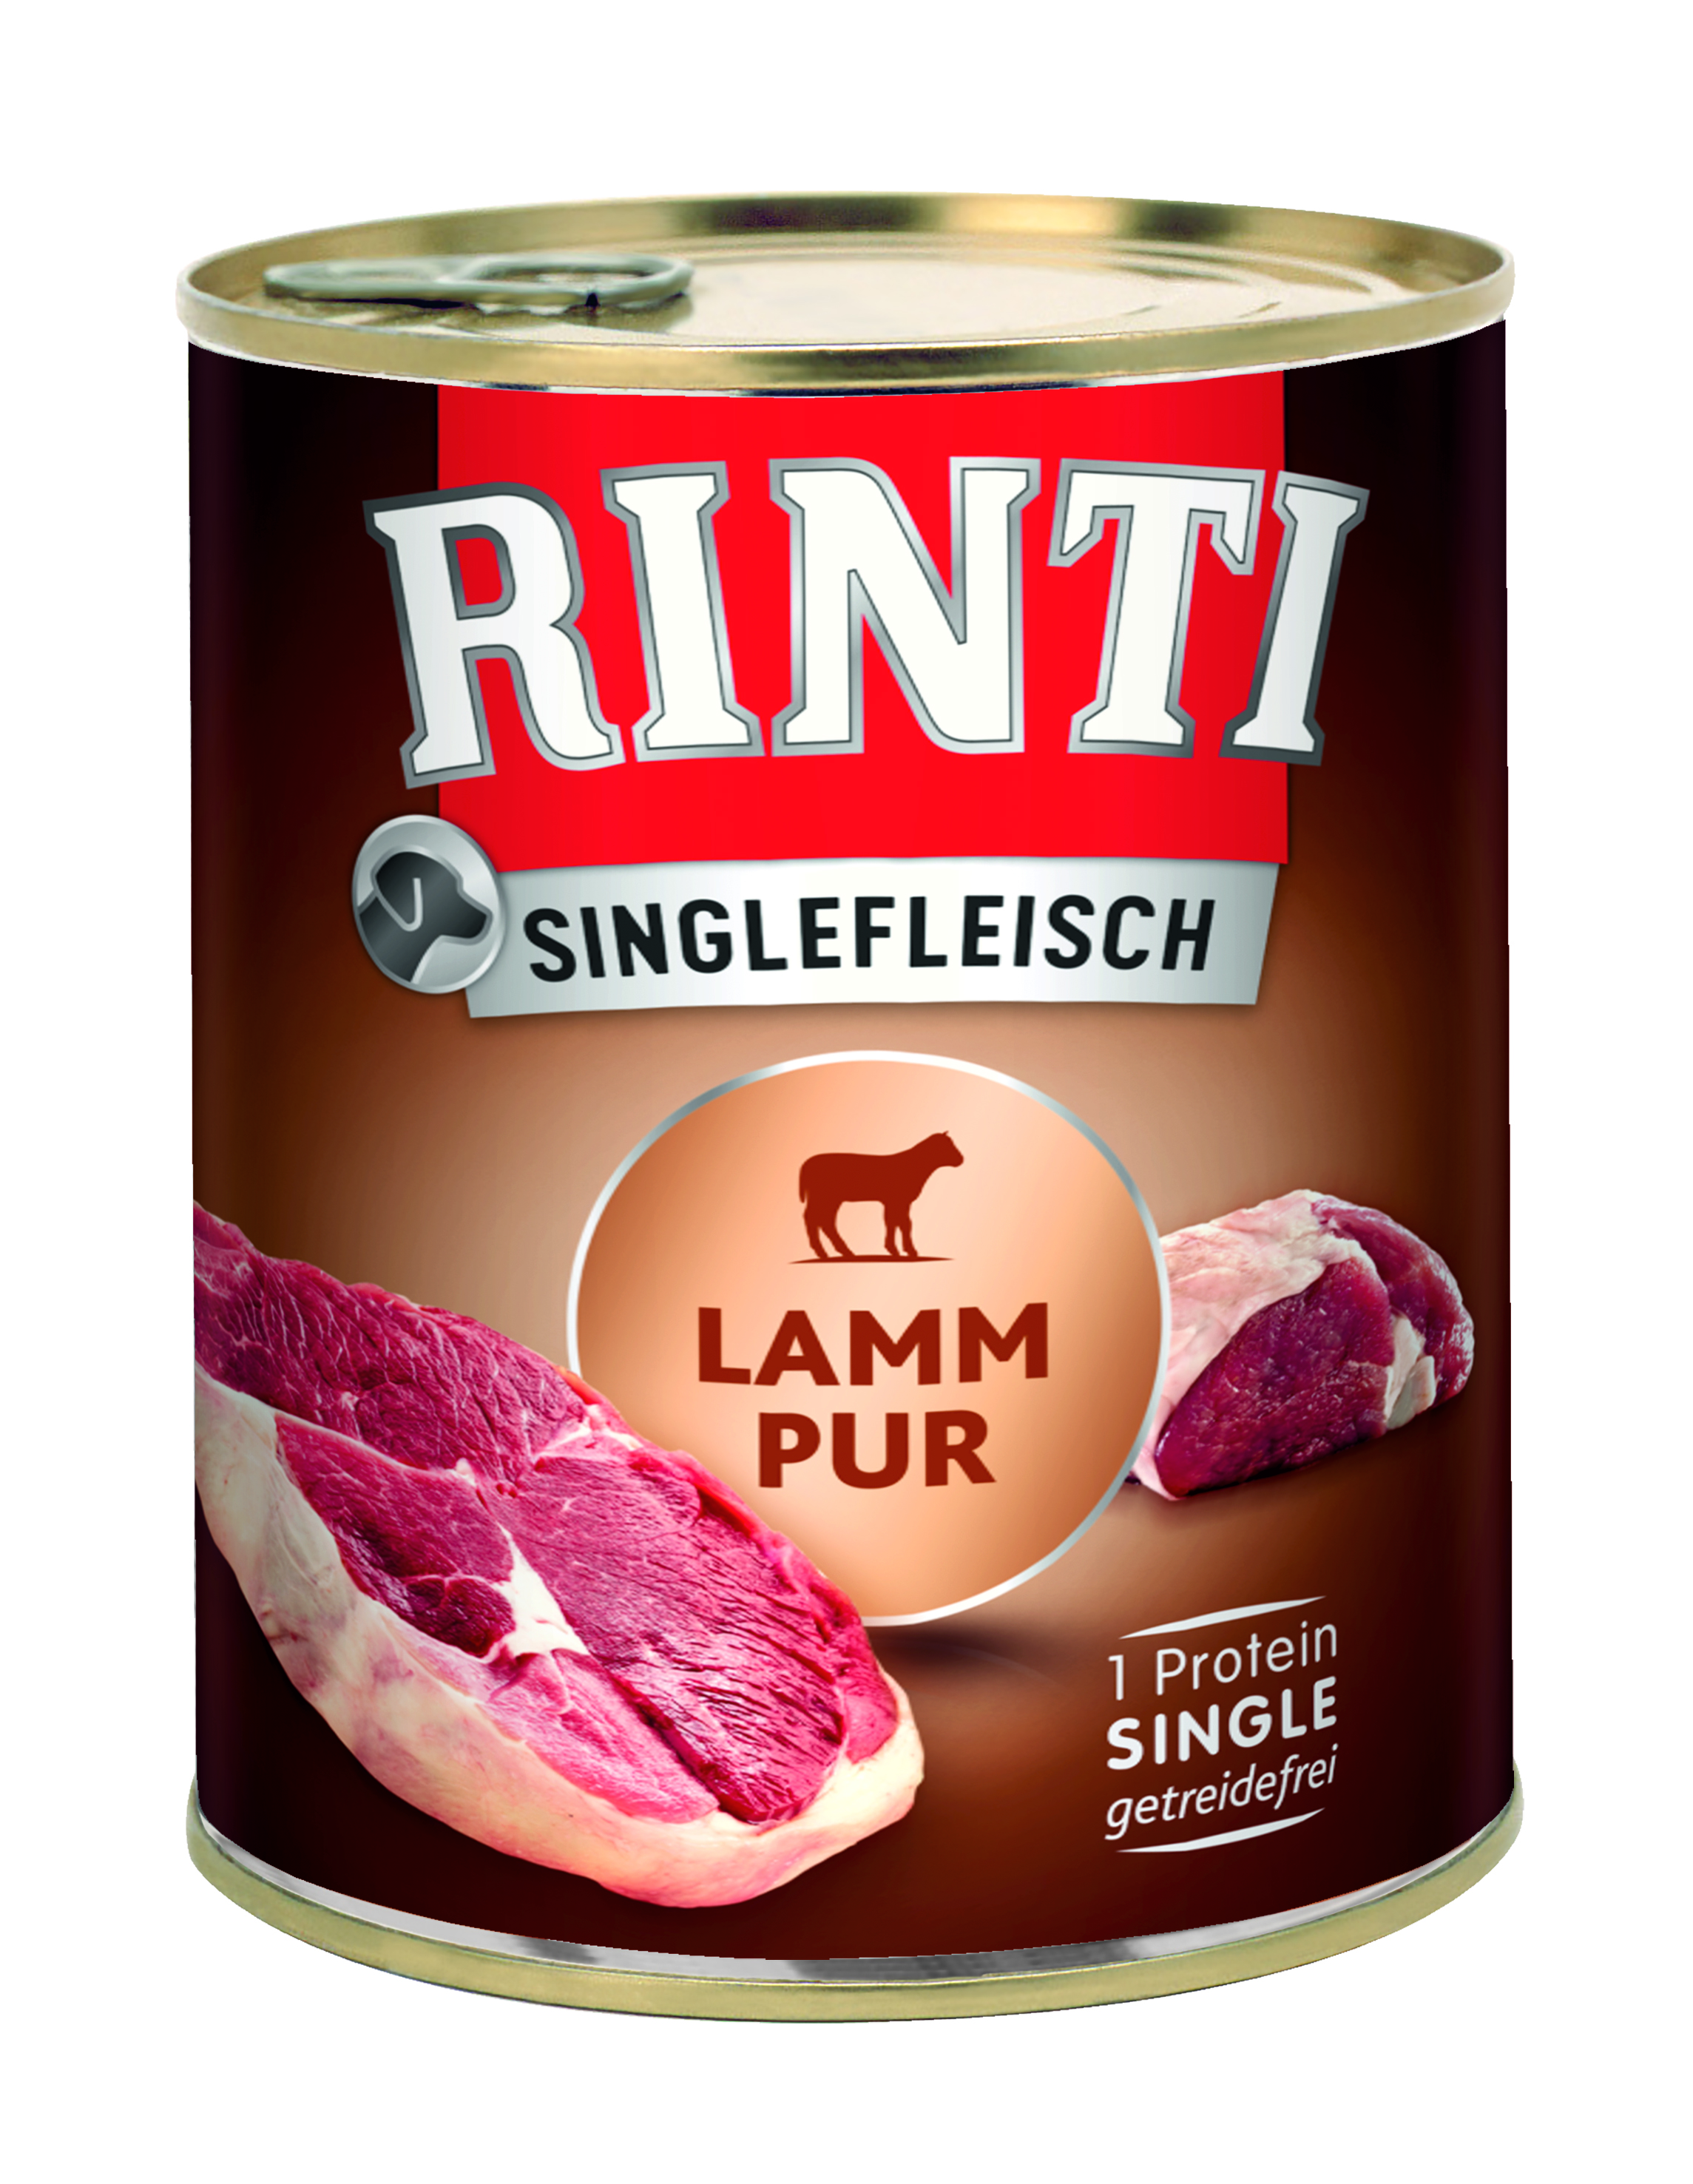 Rinti Singlefleisch Lamm Pur 800g